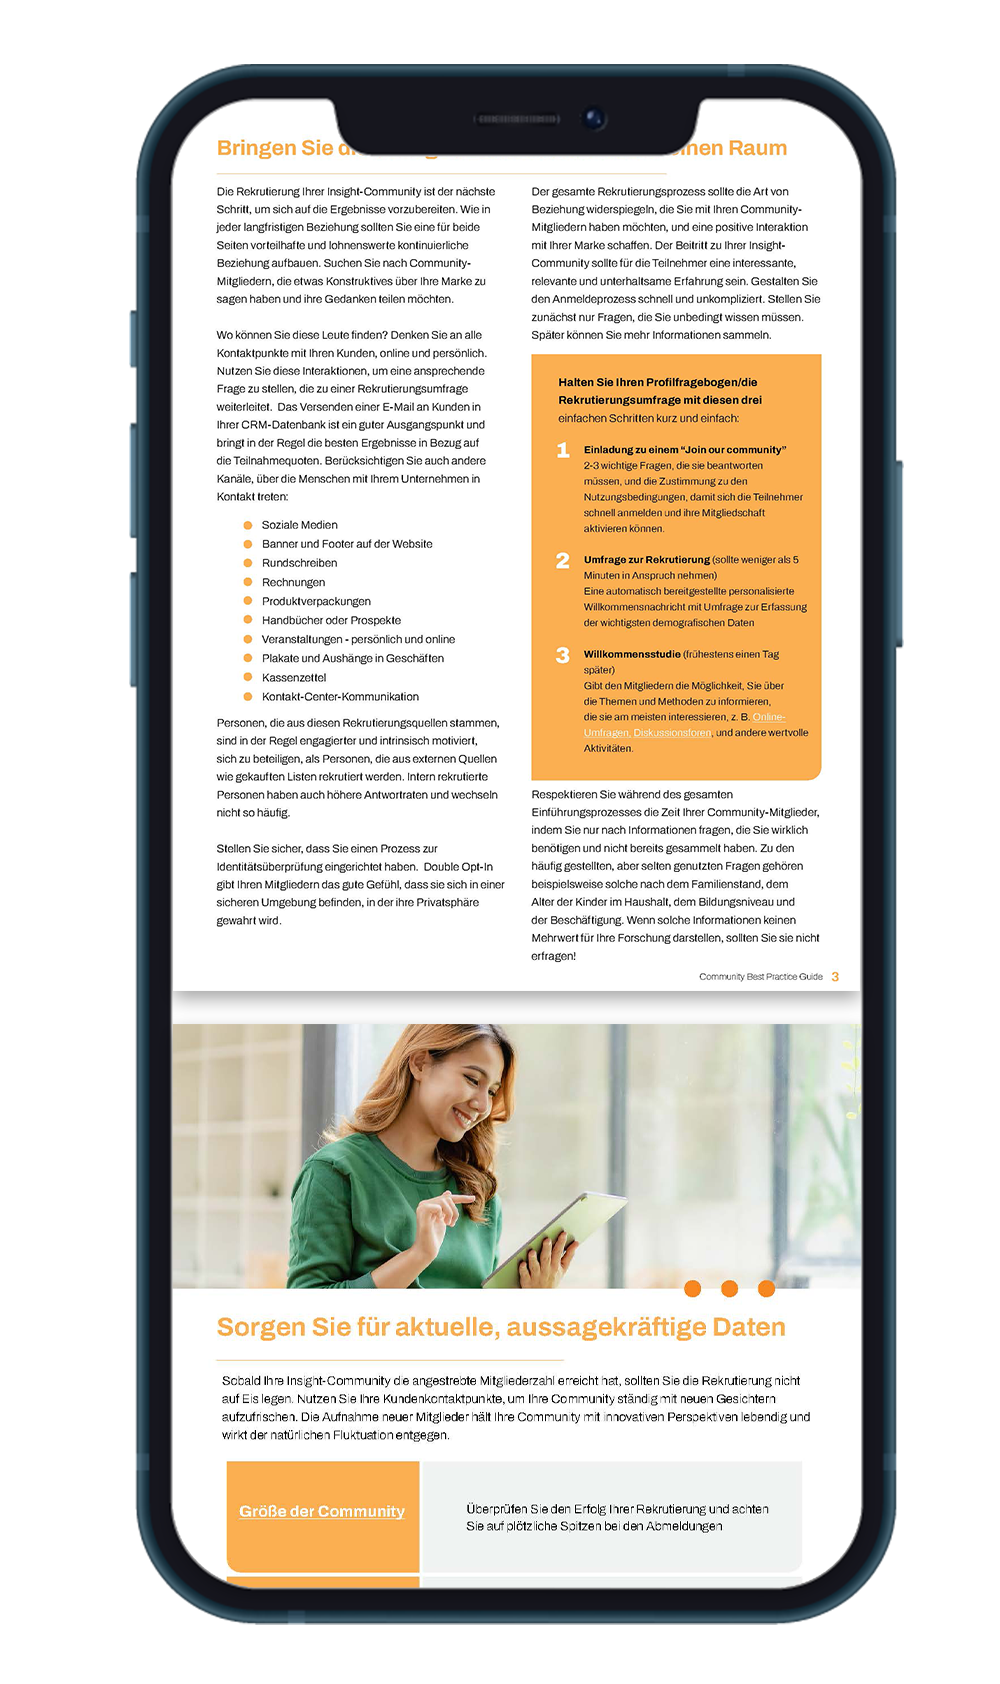 DE best practices ebook on mobile